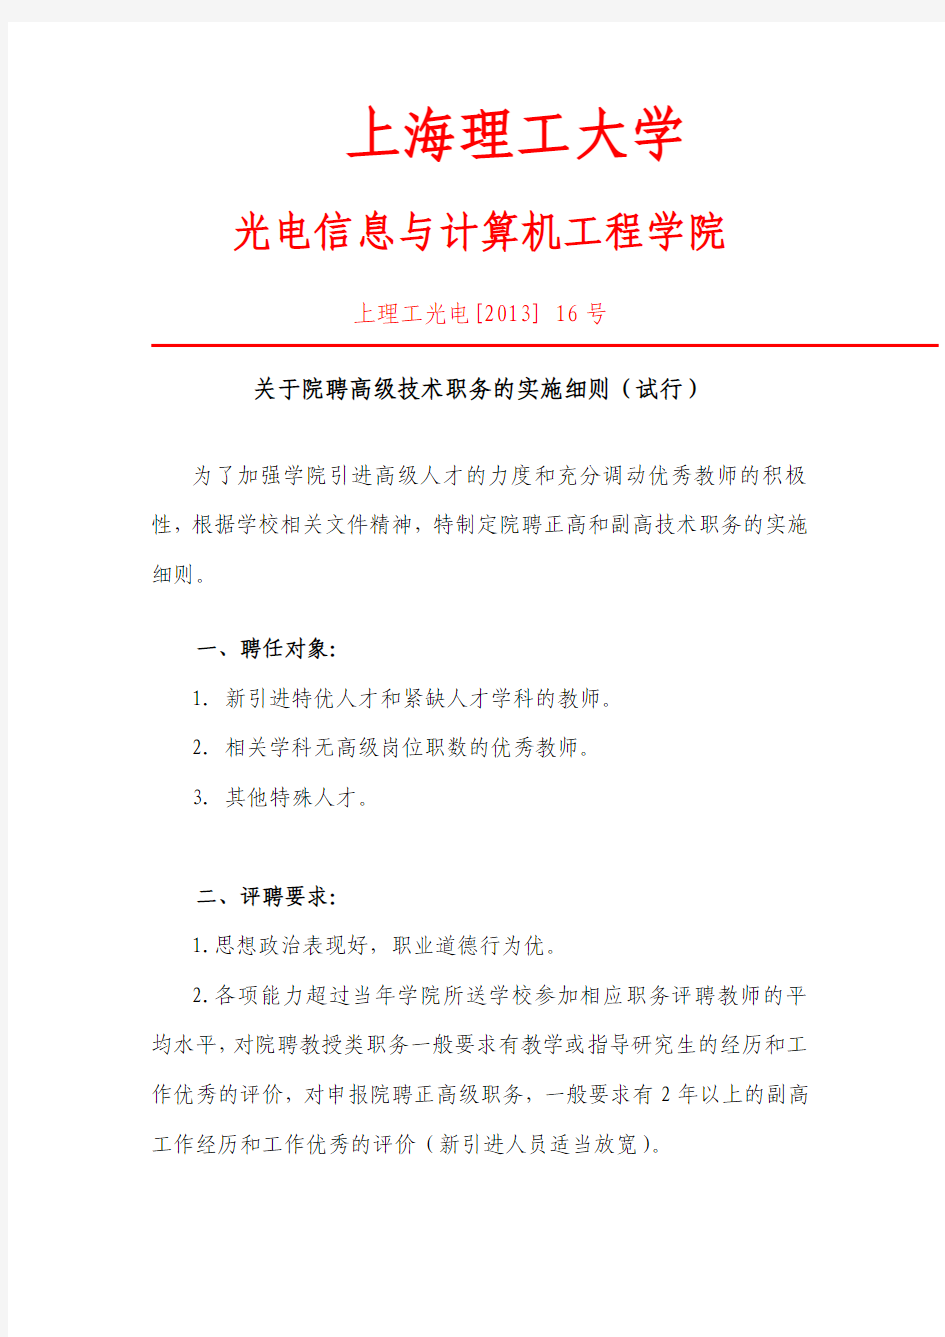 上海理工大学-光电信息与计算机工程学院